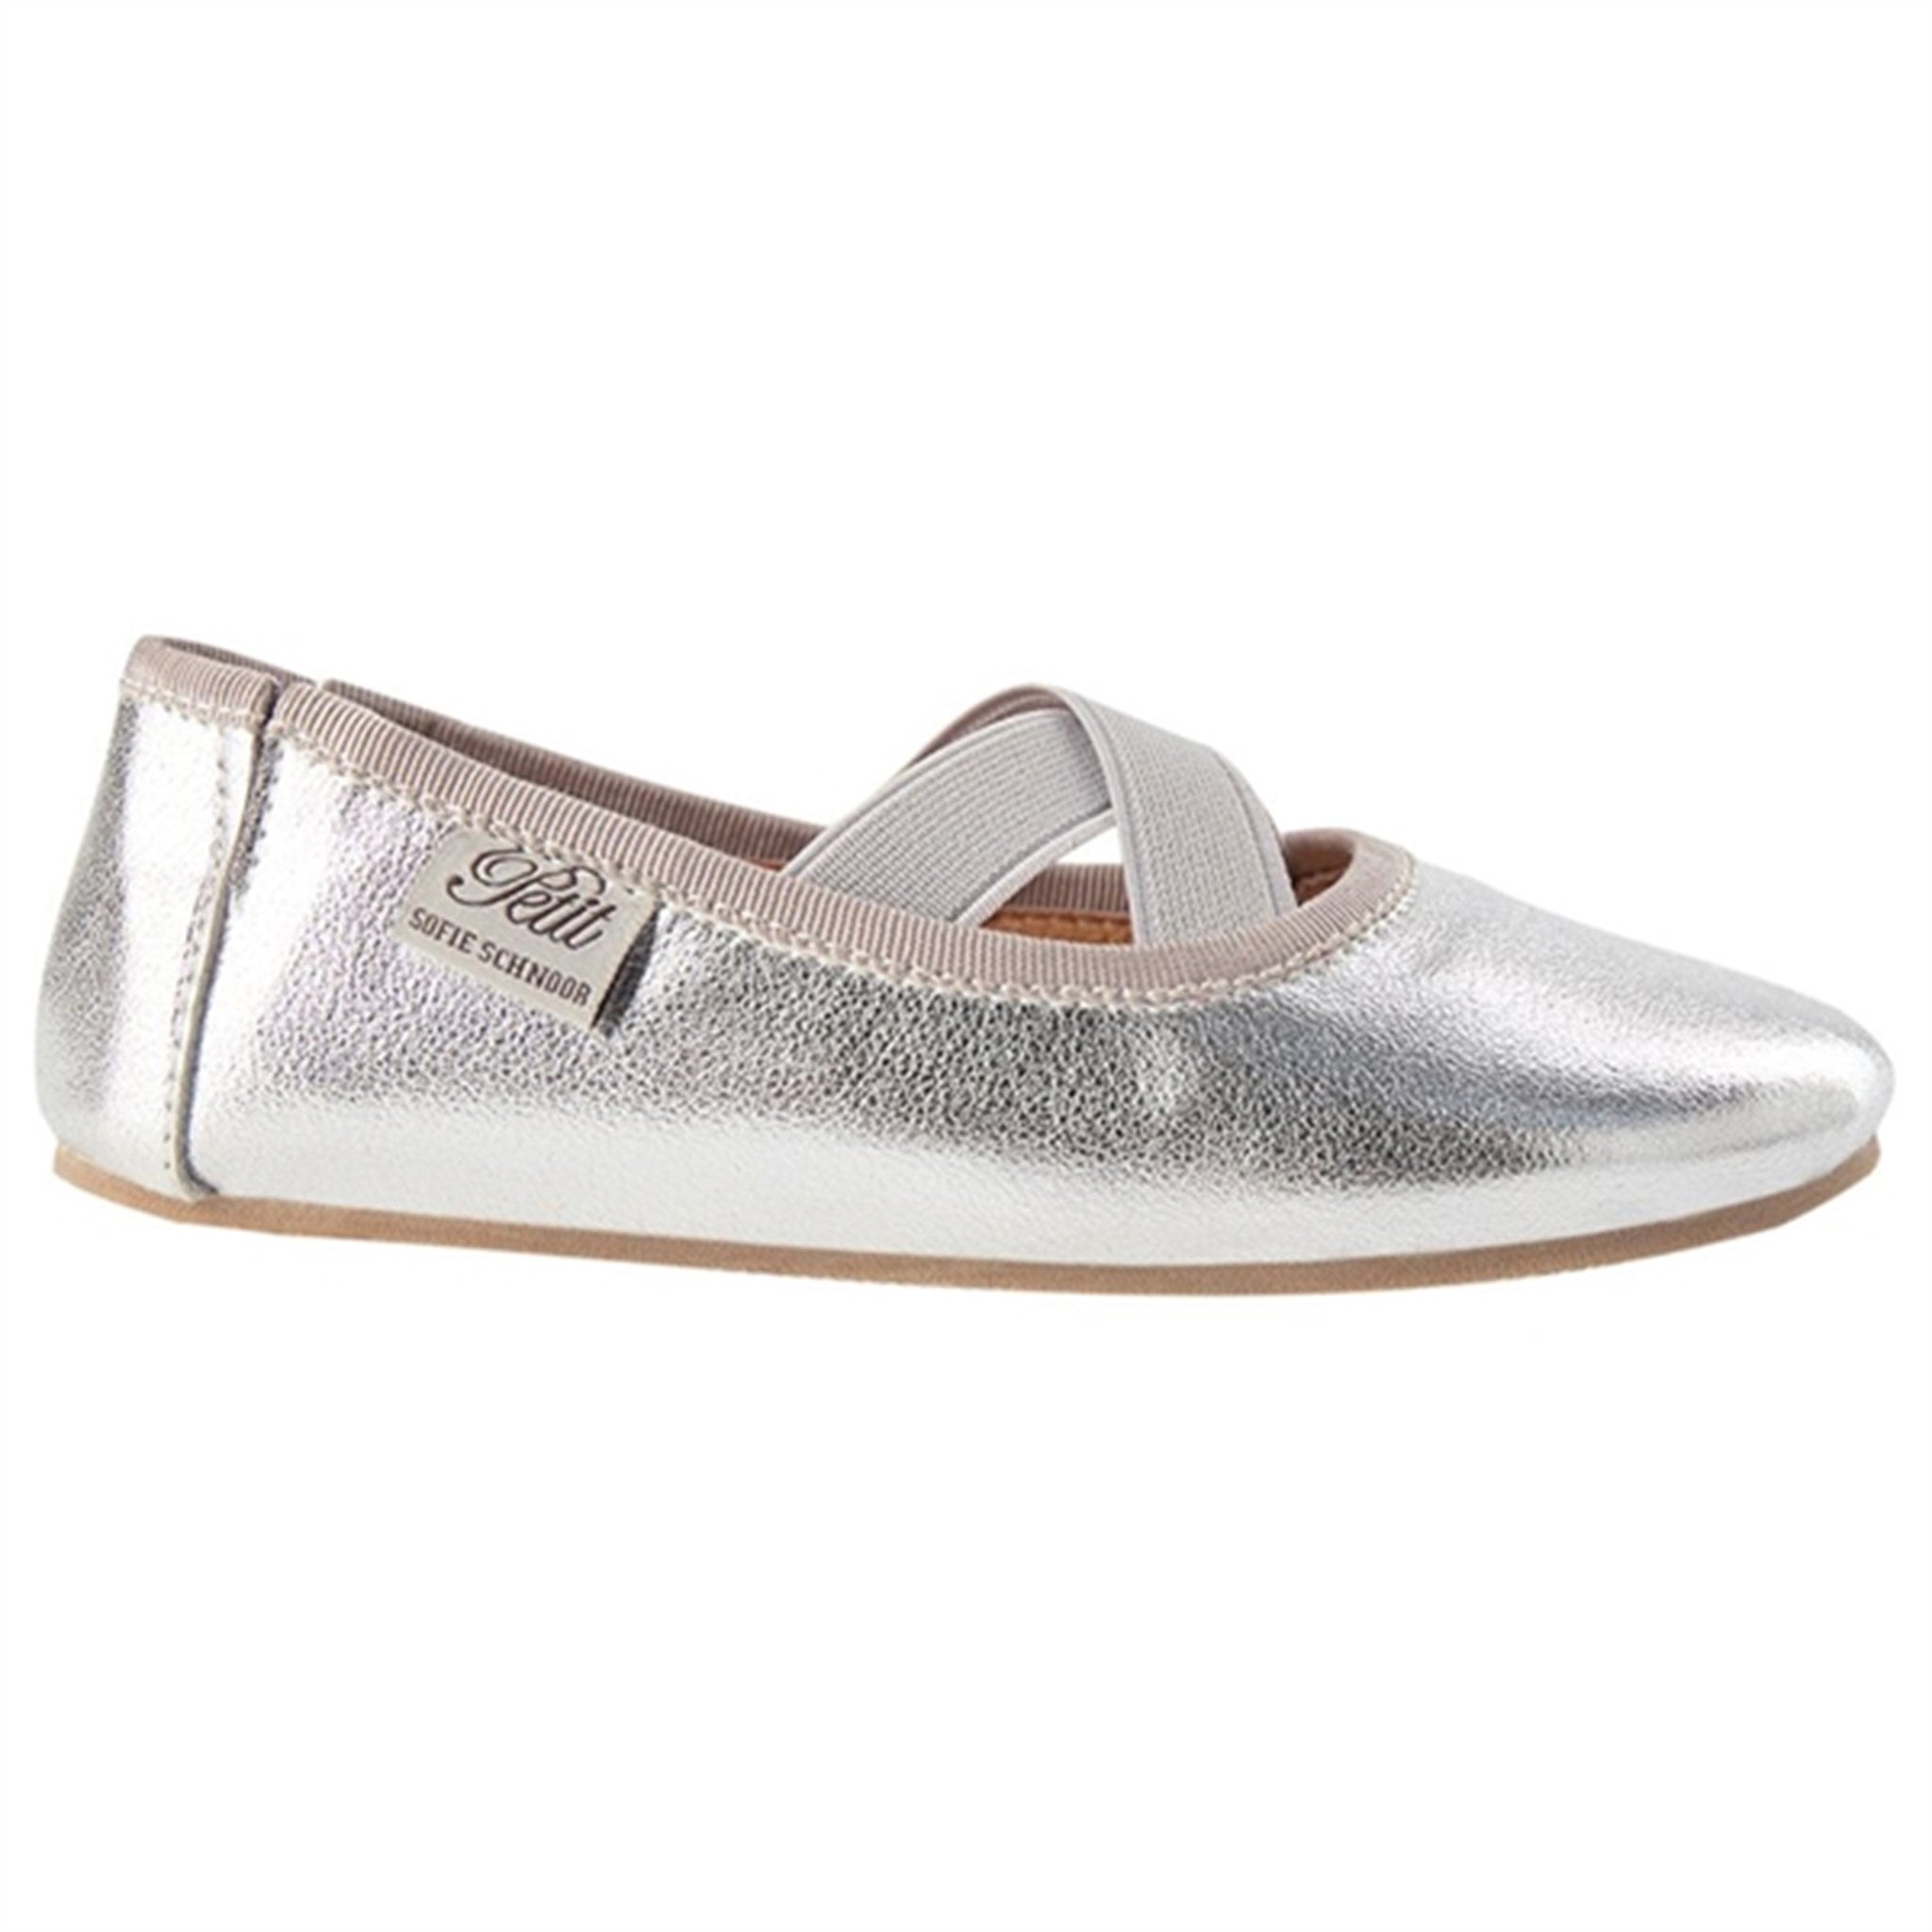 Sofie Schnoor Indoor Shoes Silver 6